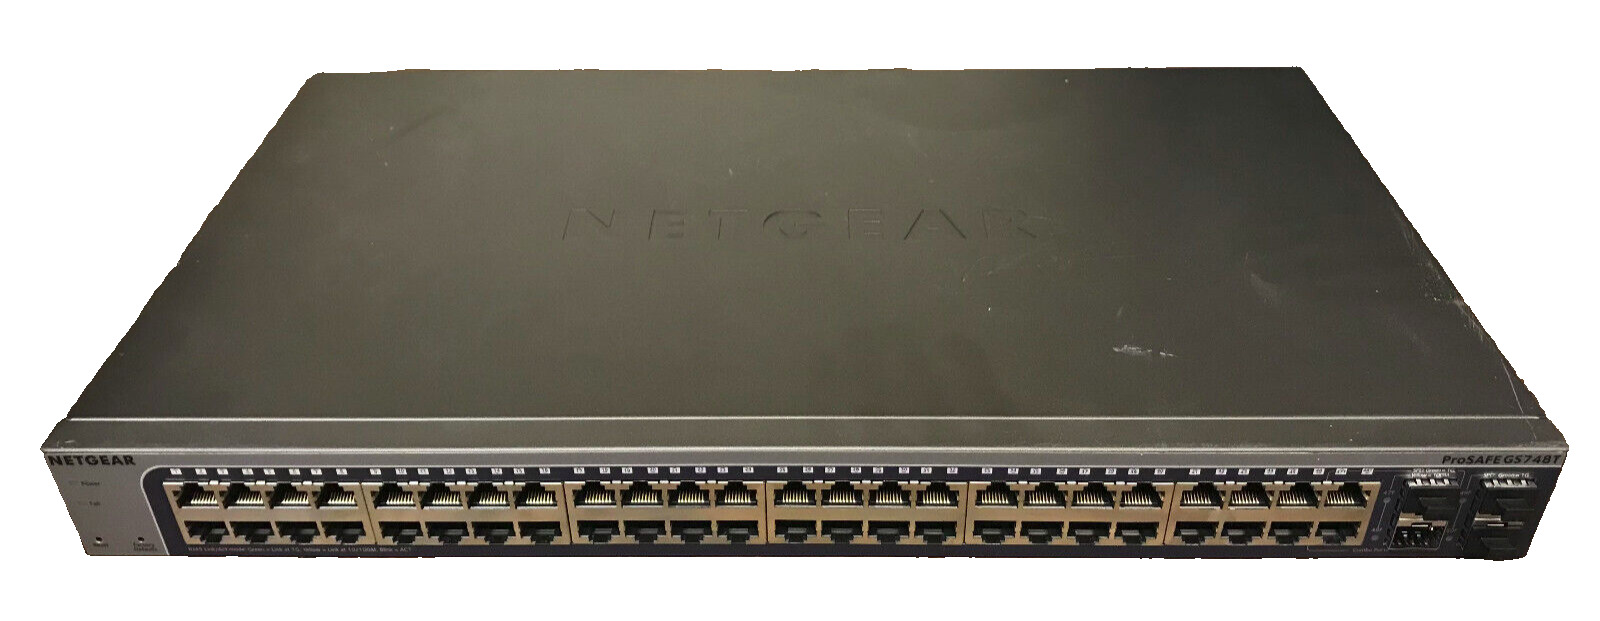 Netgear ProSafe GS748T V5 48-Port Gigabit Ethernet Smart Switch UNTESTED AS IS